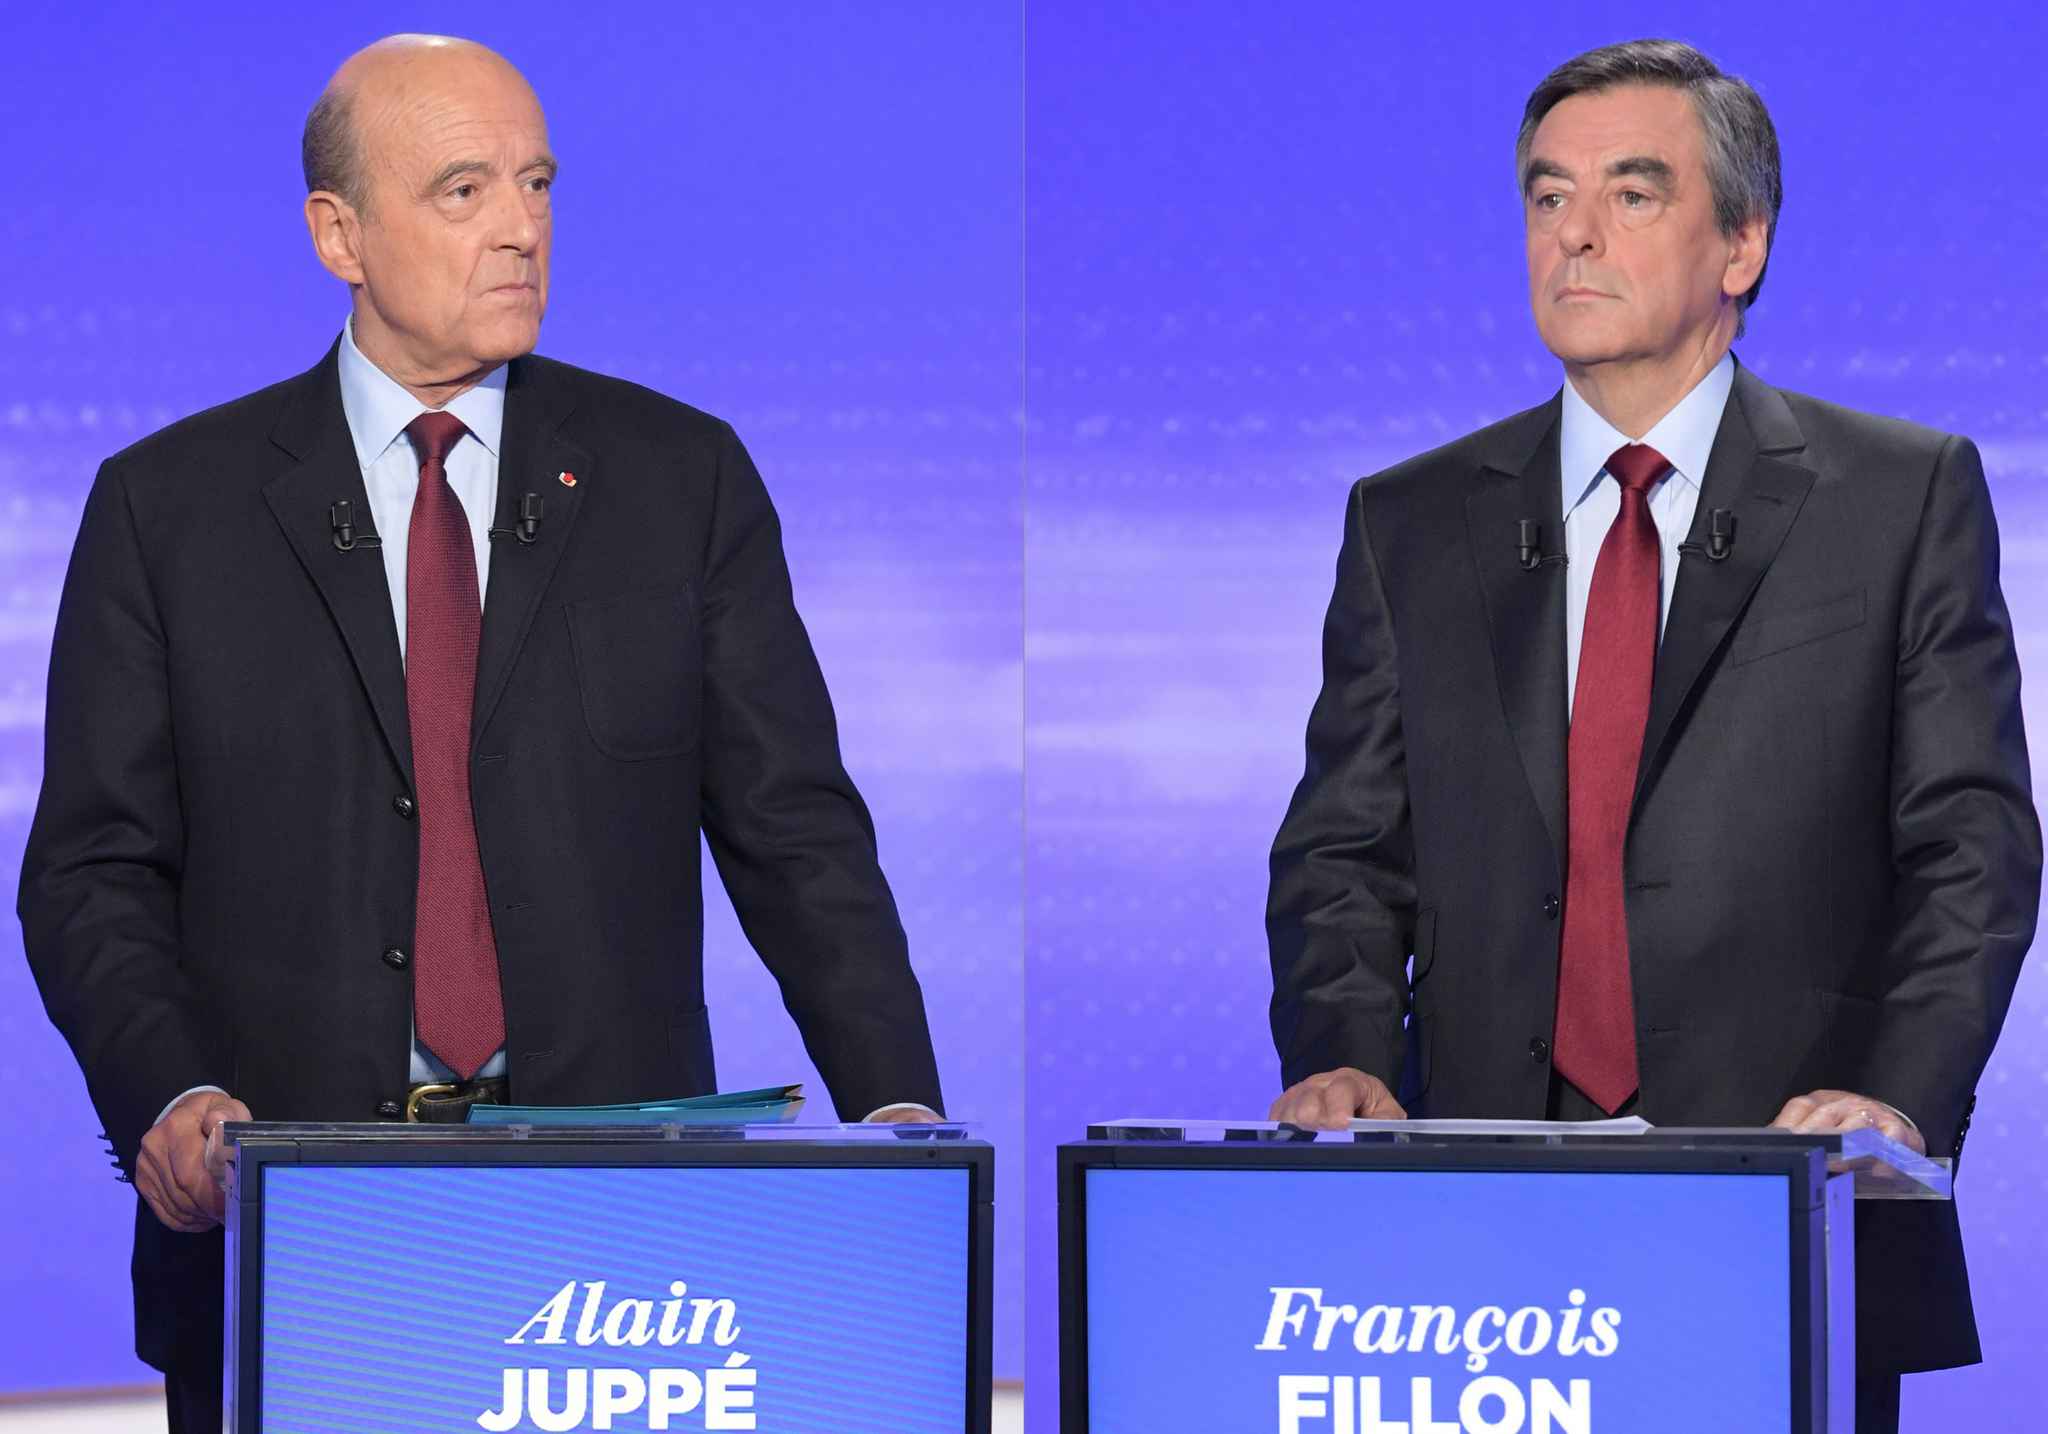 France- présidentielle 2017: Alain Juppé et François Fillon attendus pour le débat de la primaire à 20H TU